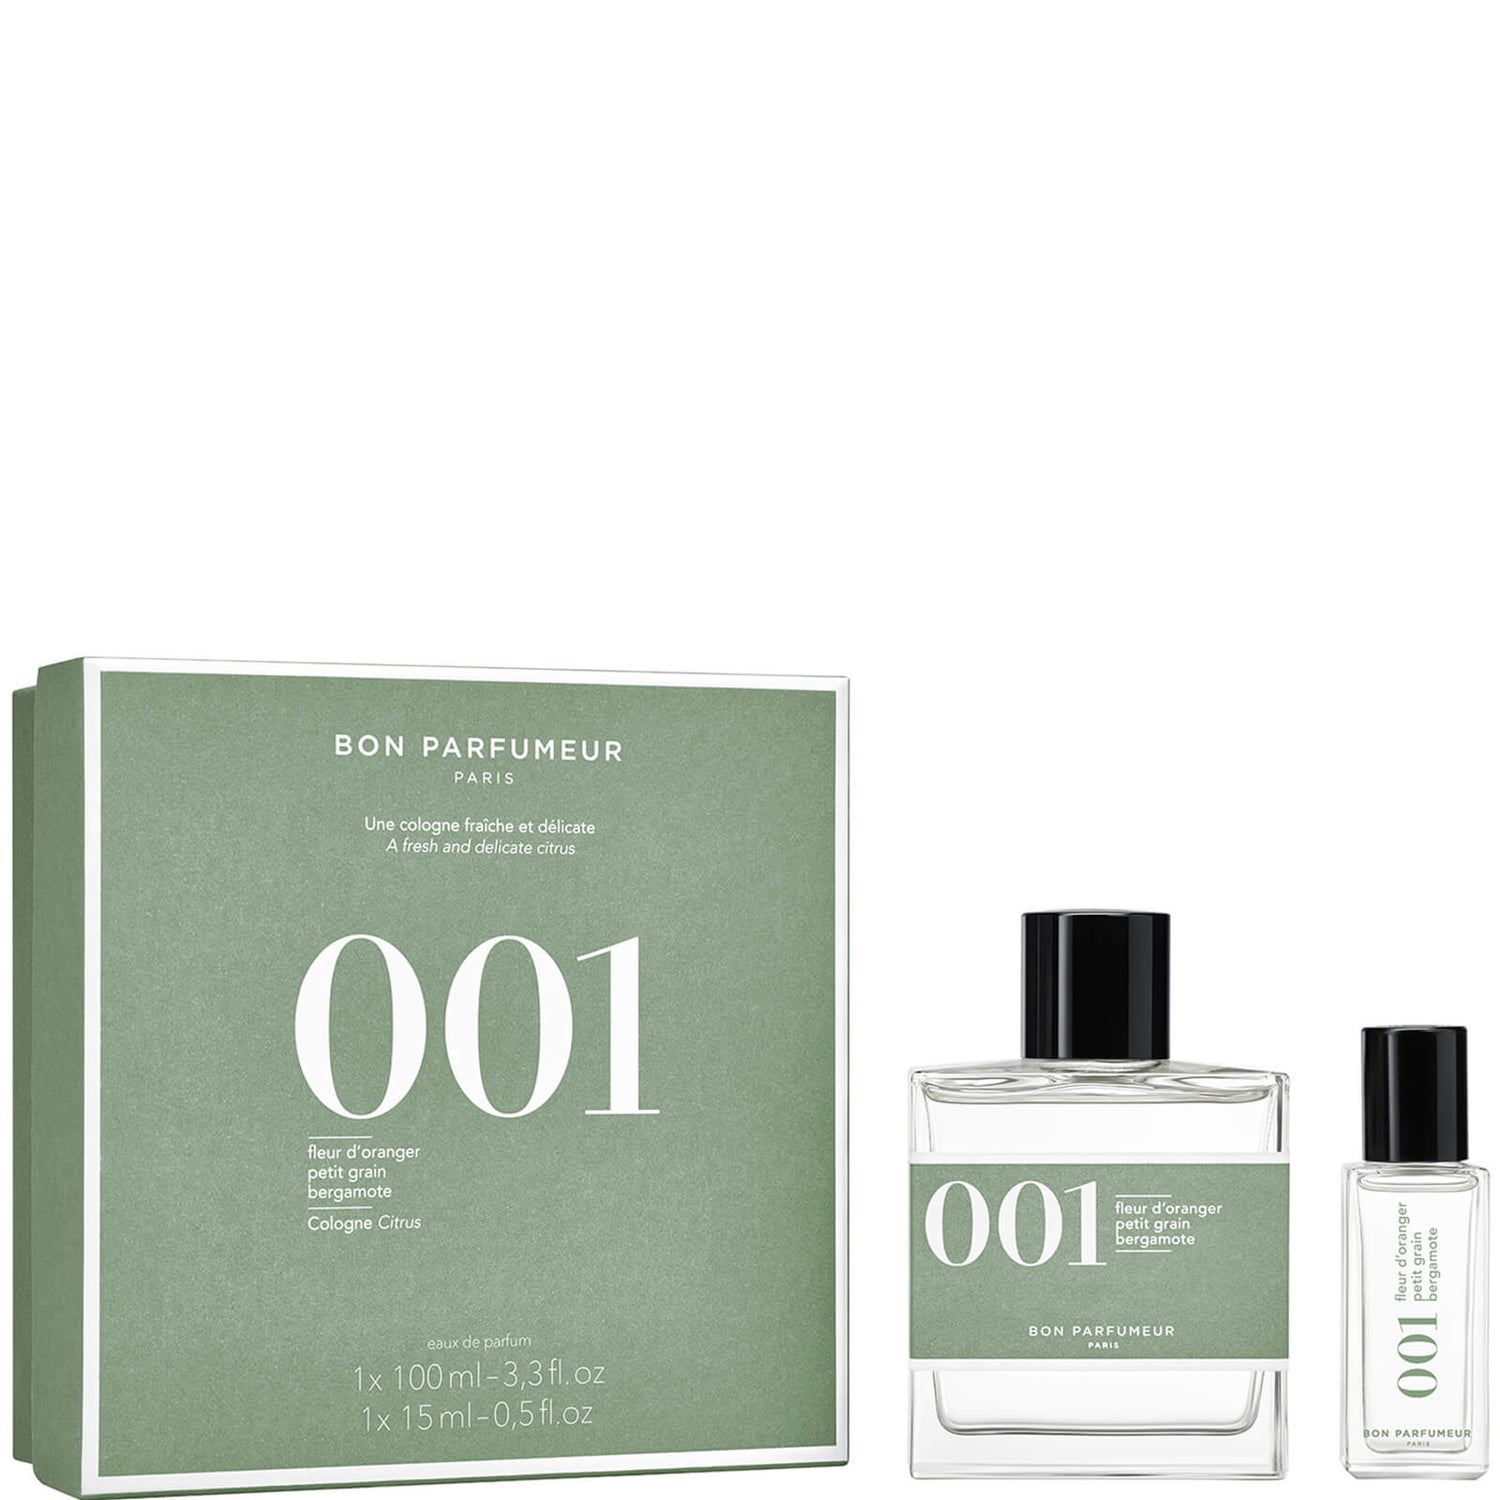 Bon Parfumeur Limited Edition Set (Worth £107.00) - LOOKFANTASTIC